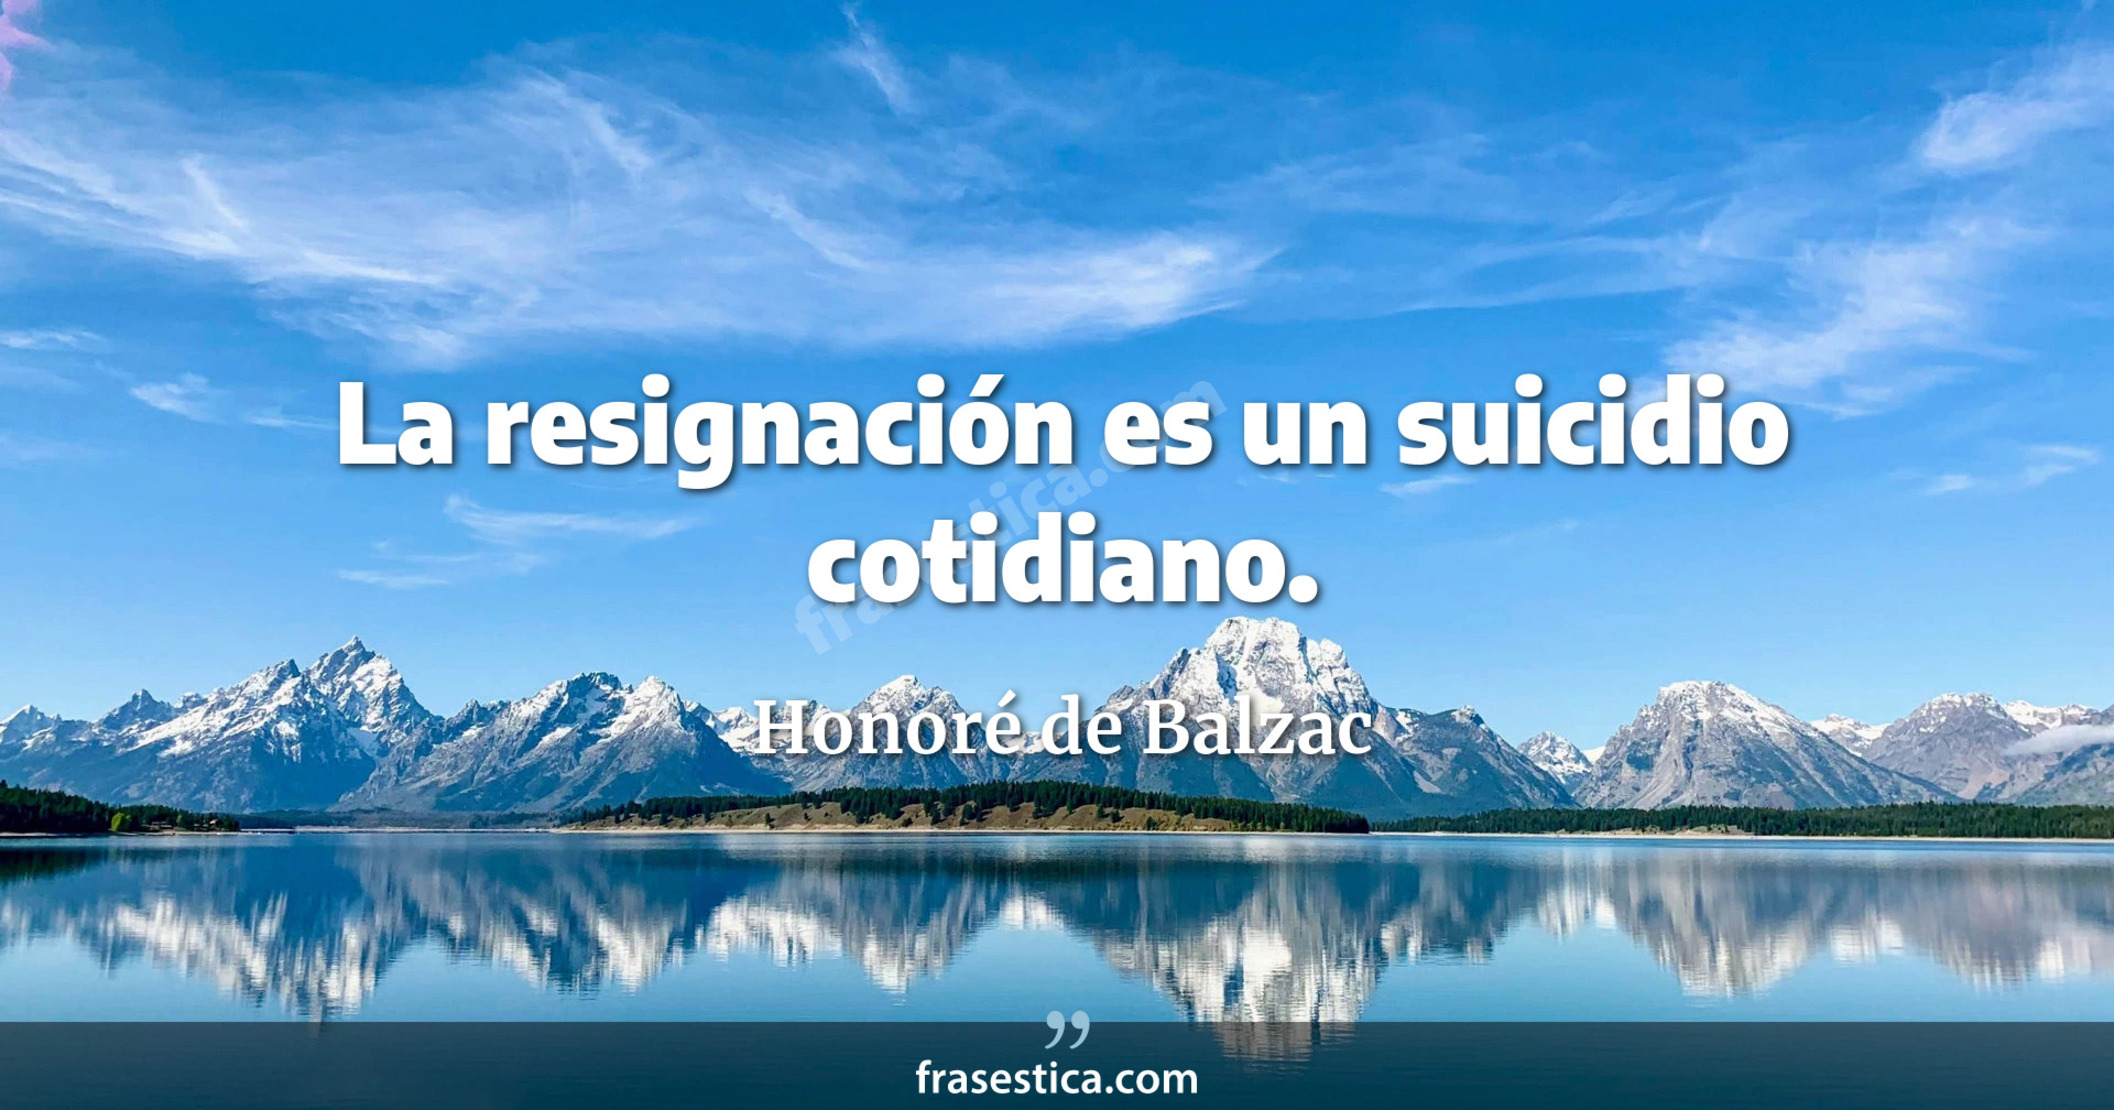 La resignación es un suicidio cotidiano. - Honoré de Balzac